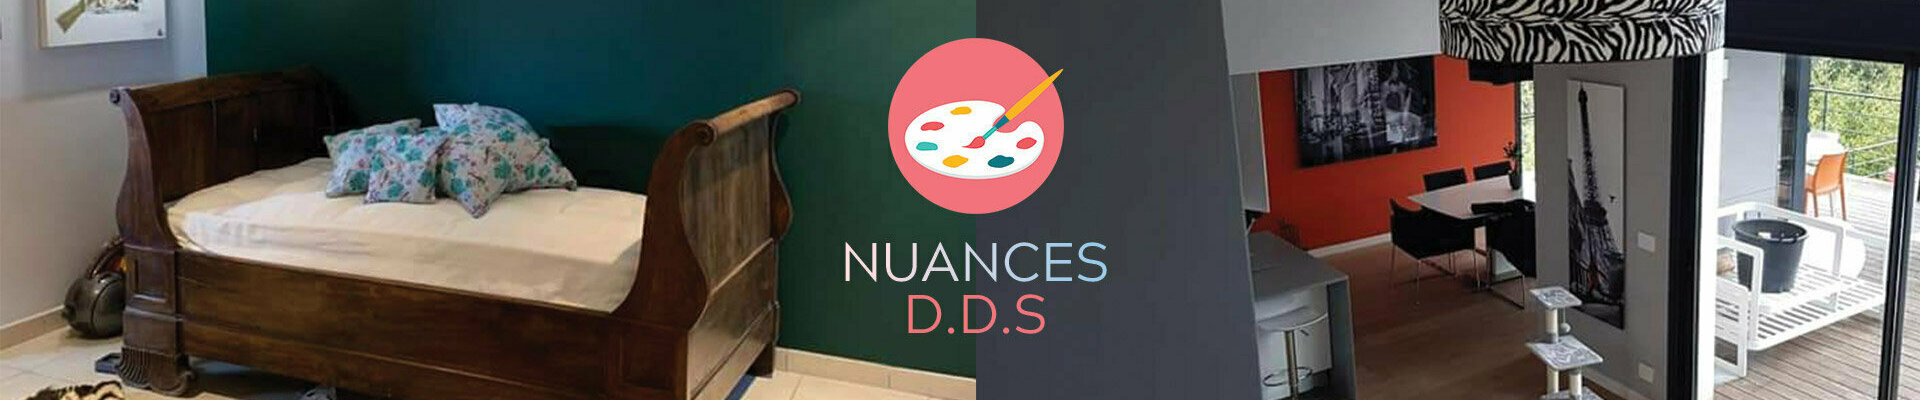 Peinture decorative | NUANCES DDS - Entreprise de peinture à Montpellier